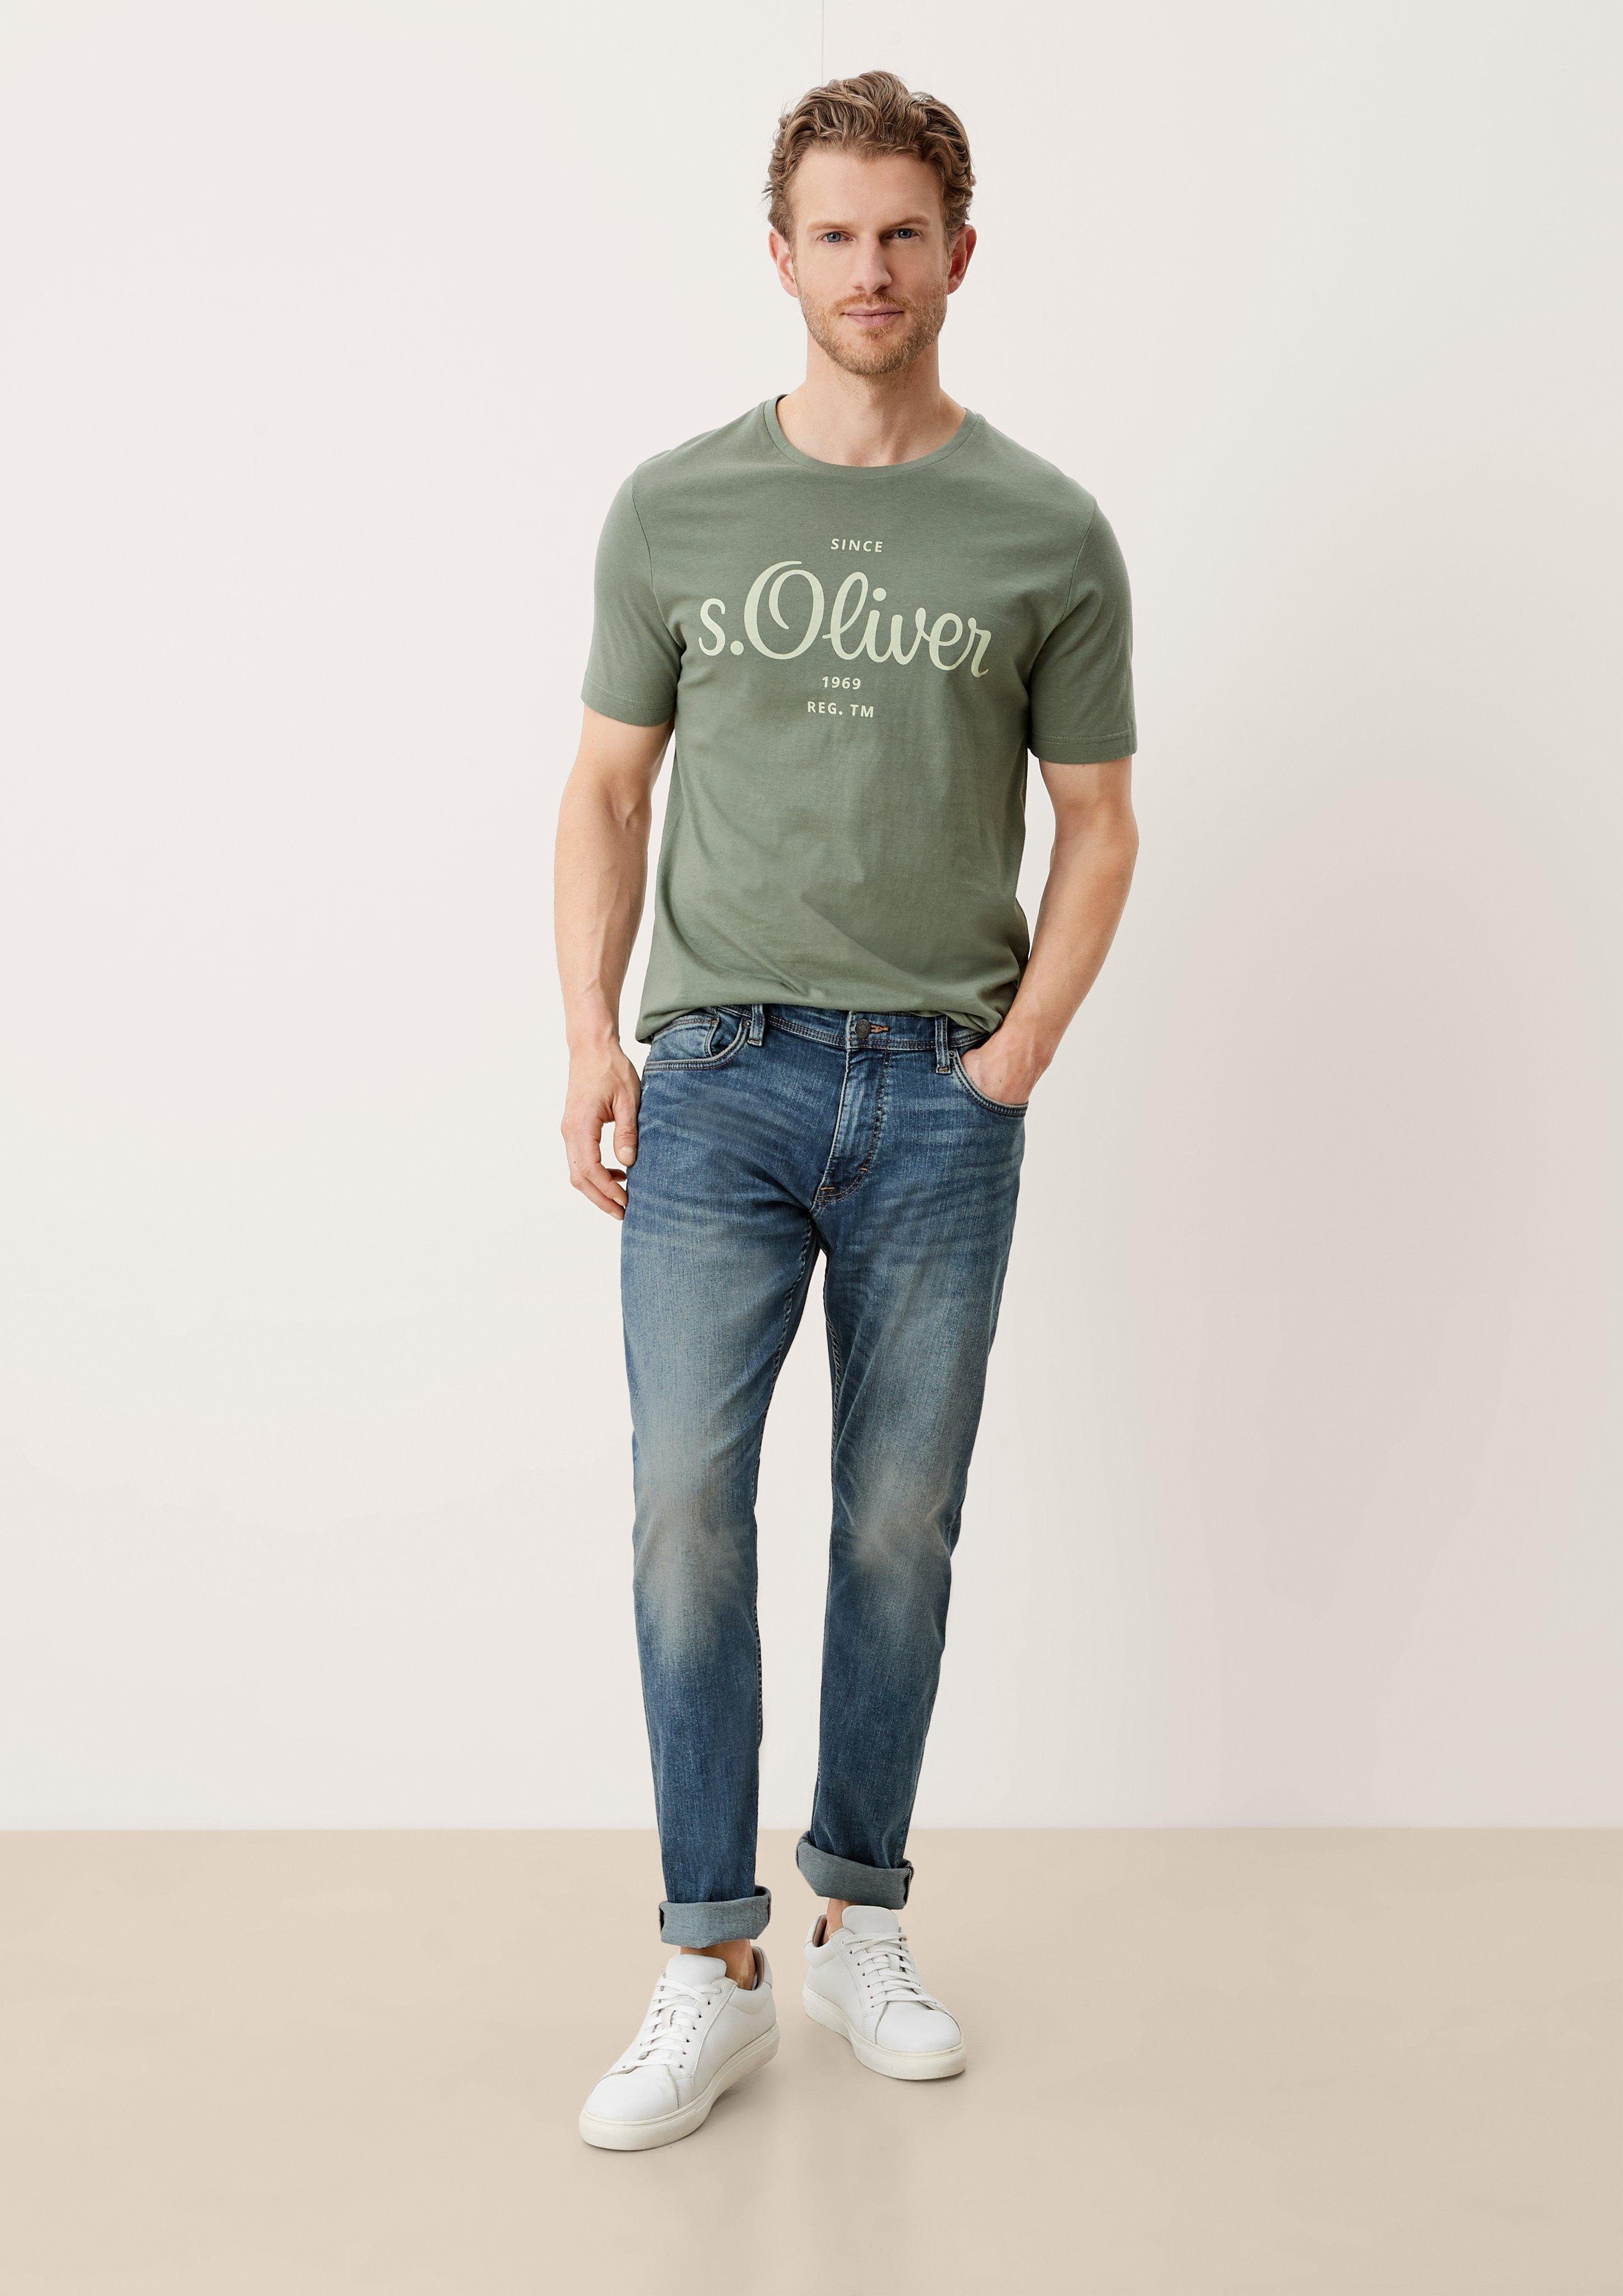 s.Oliver 5-Pocket-Jeans Slim light Fit Jeans Mid blue / Destroyes, Leg / Rise Keith / Waschung sretche Slim